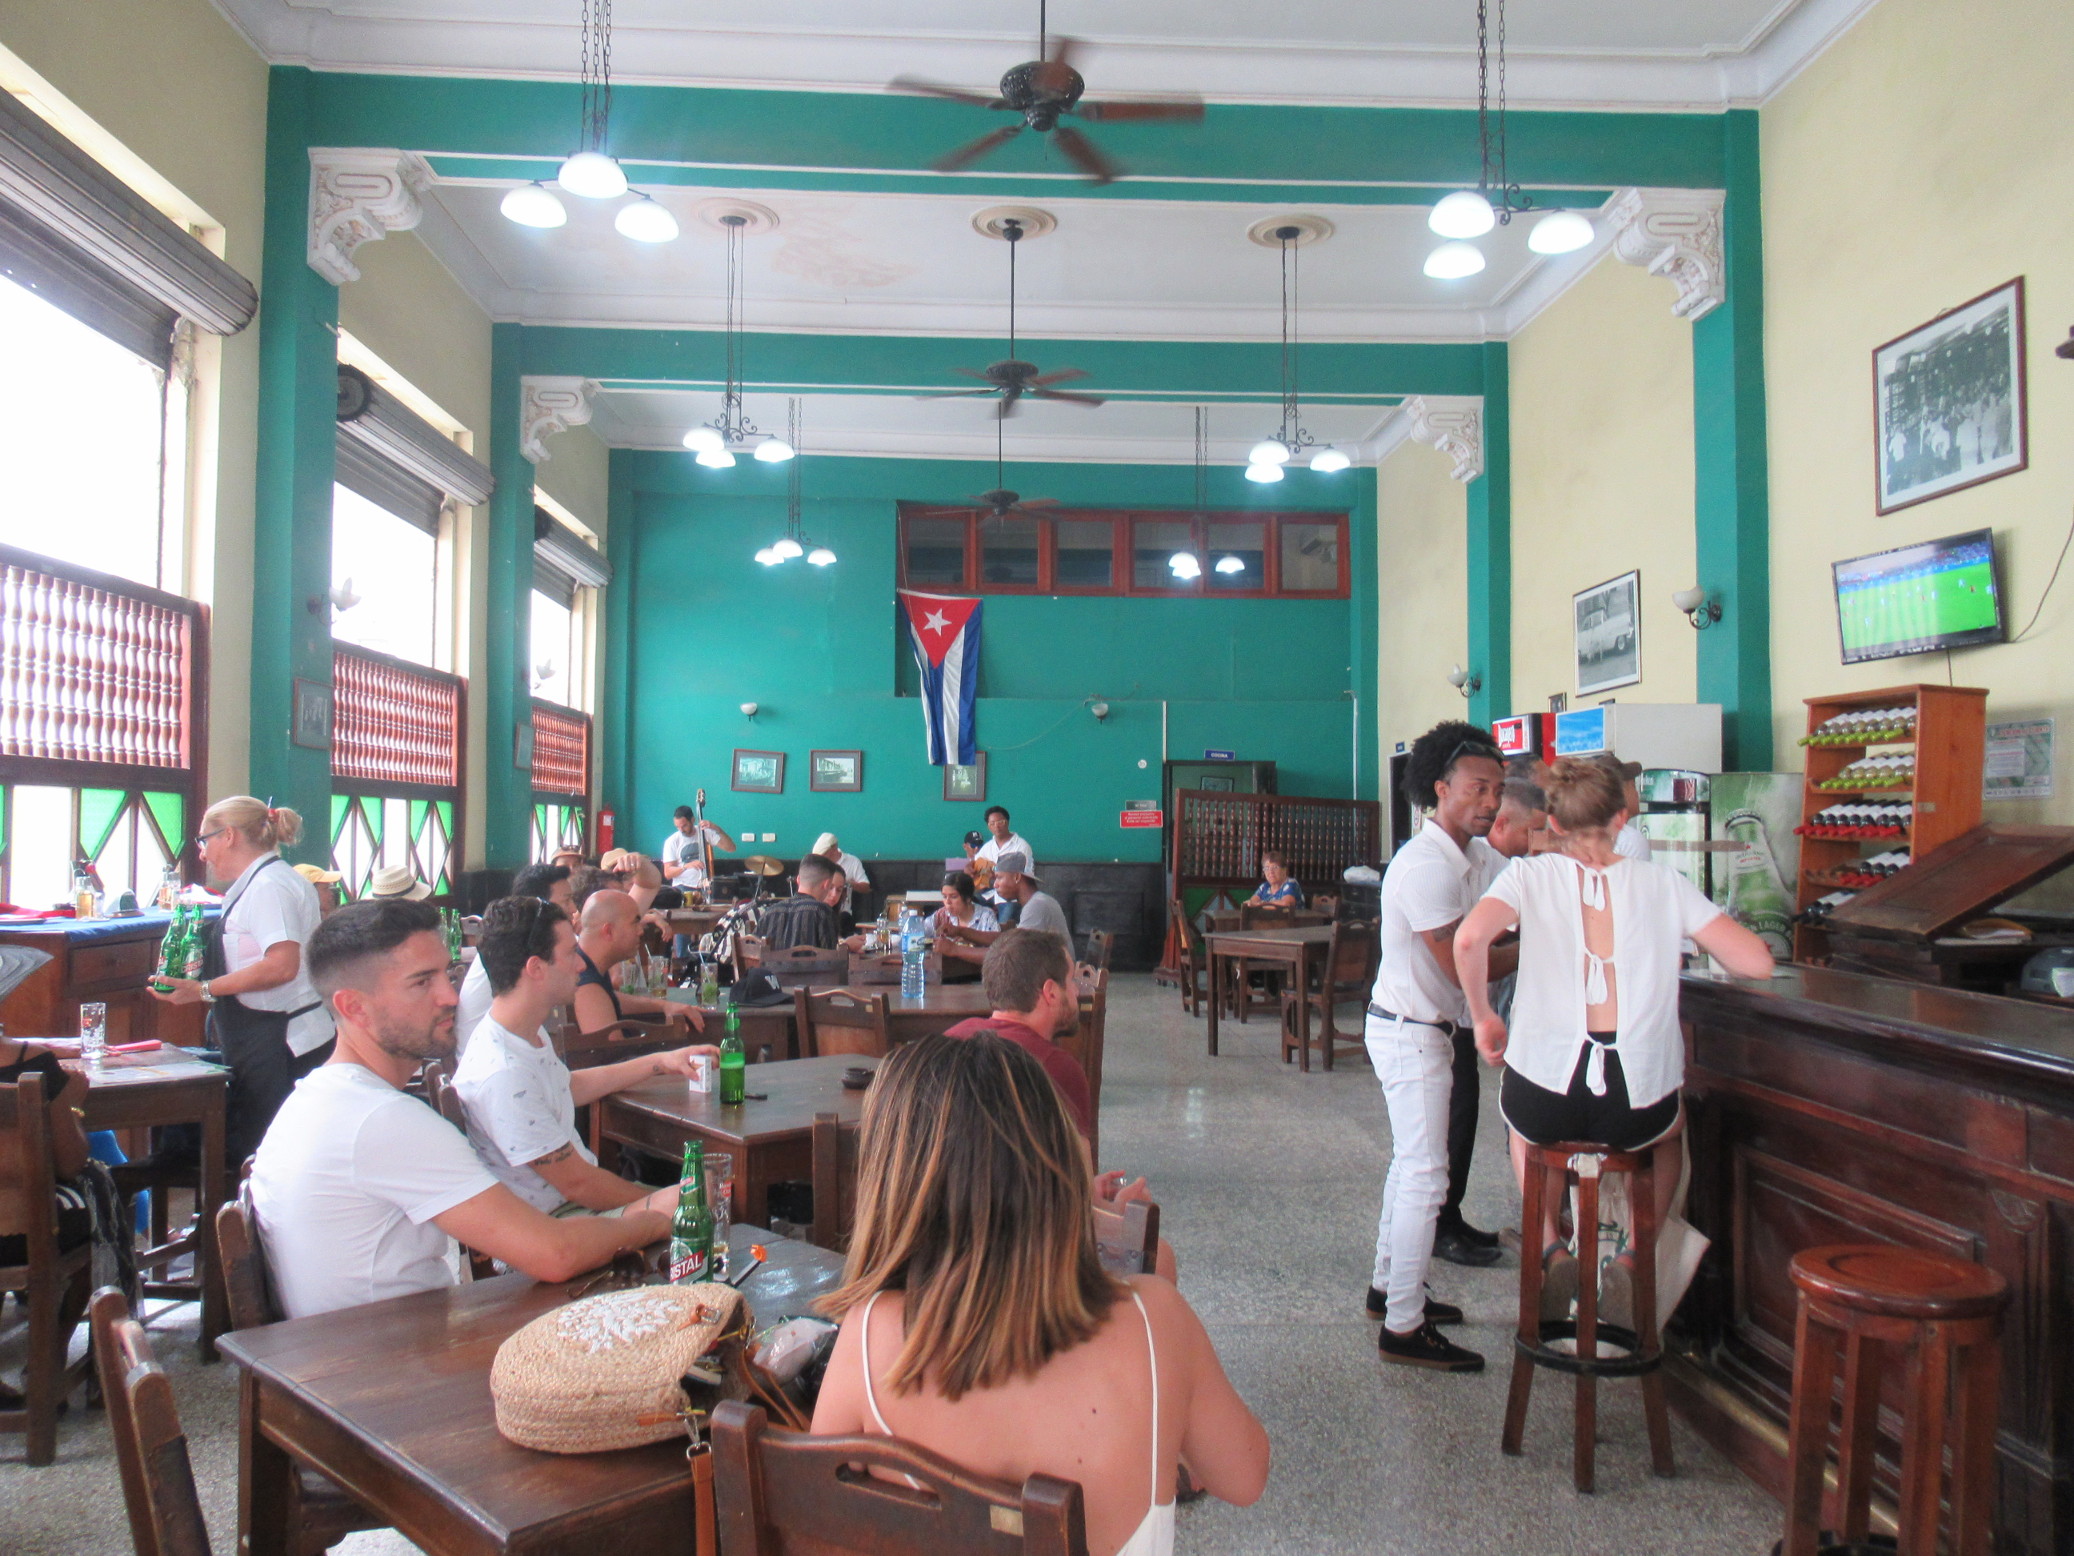 Culture Shock in Cuba